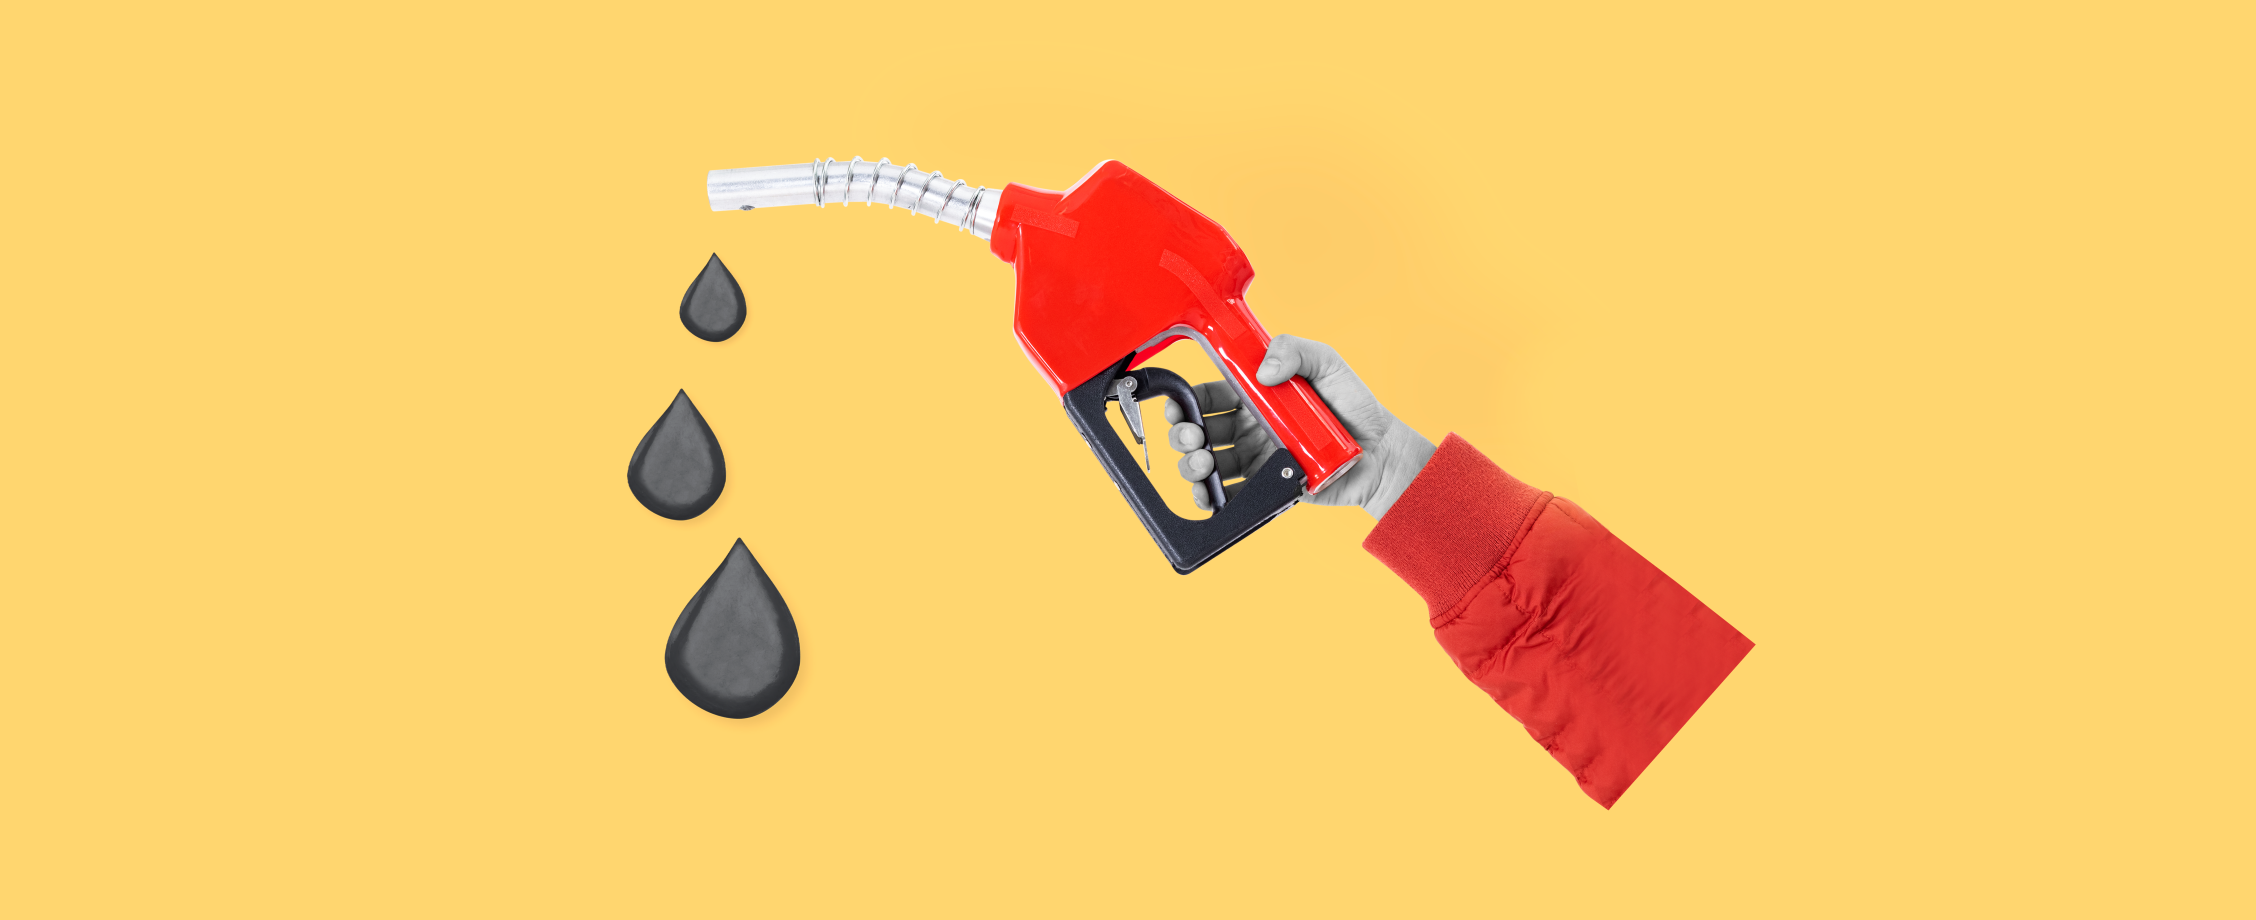 Бензину отпустили цены: топливо стремительно дорожает на бирже